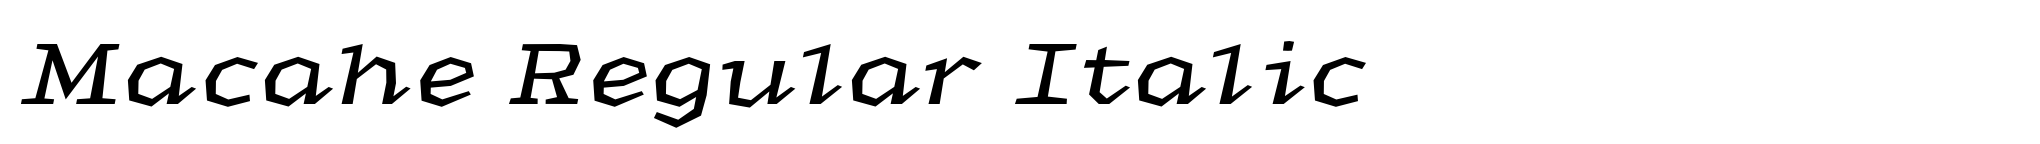 Macahe Regular Italic image